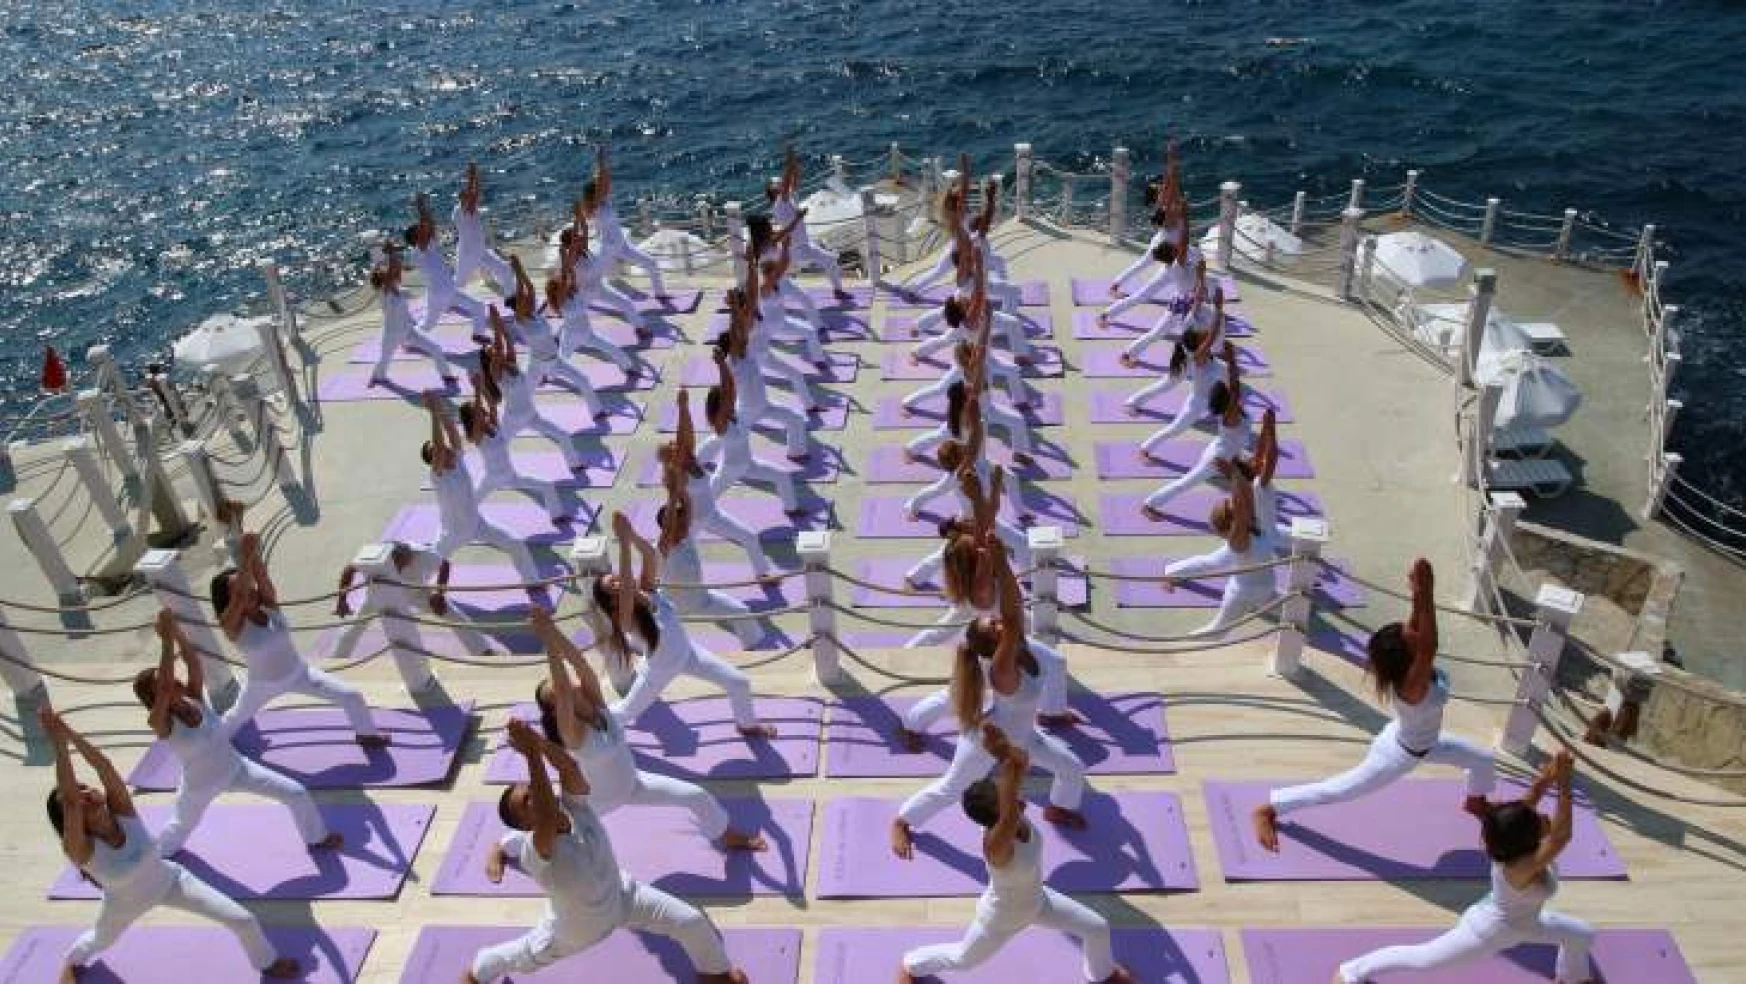 Orijinal Yoga Sistemi İle Oruç Tutmak  Daha Kolay!